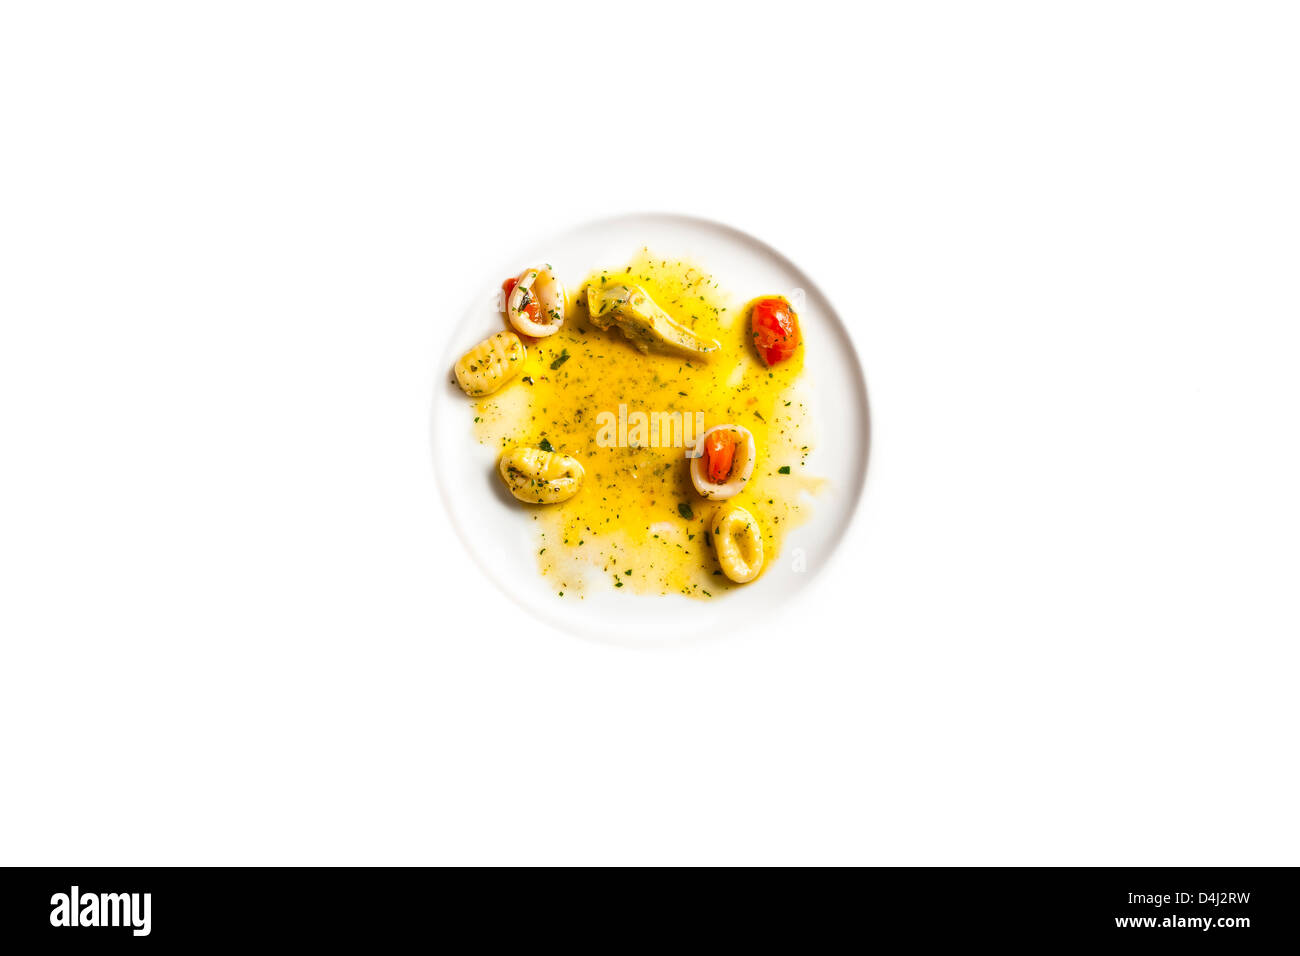 Gnocchi di Patate con Calamari e Carciofi - Kartoffel-Gnocchi mit Tintenfisch und Artischocken Stockfoto